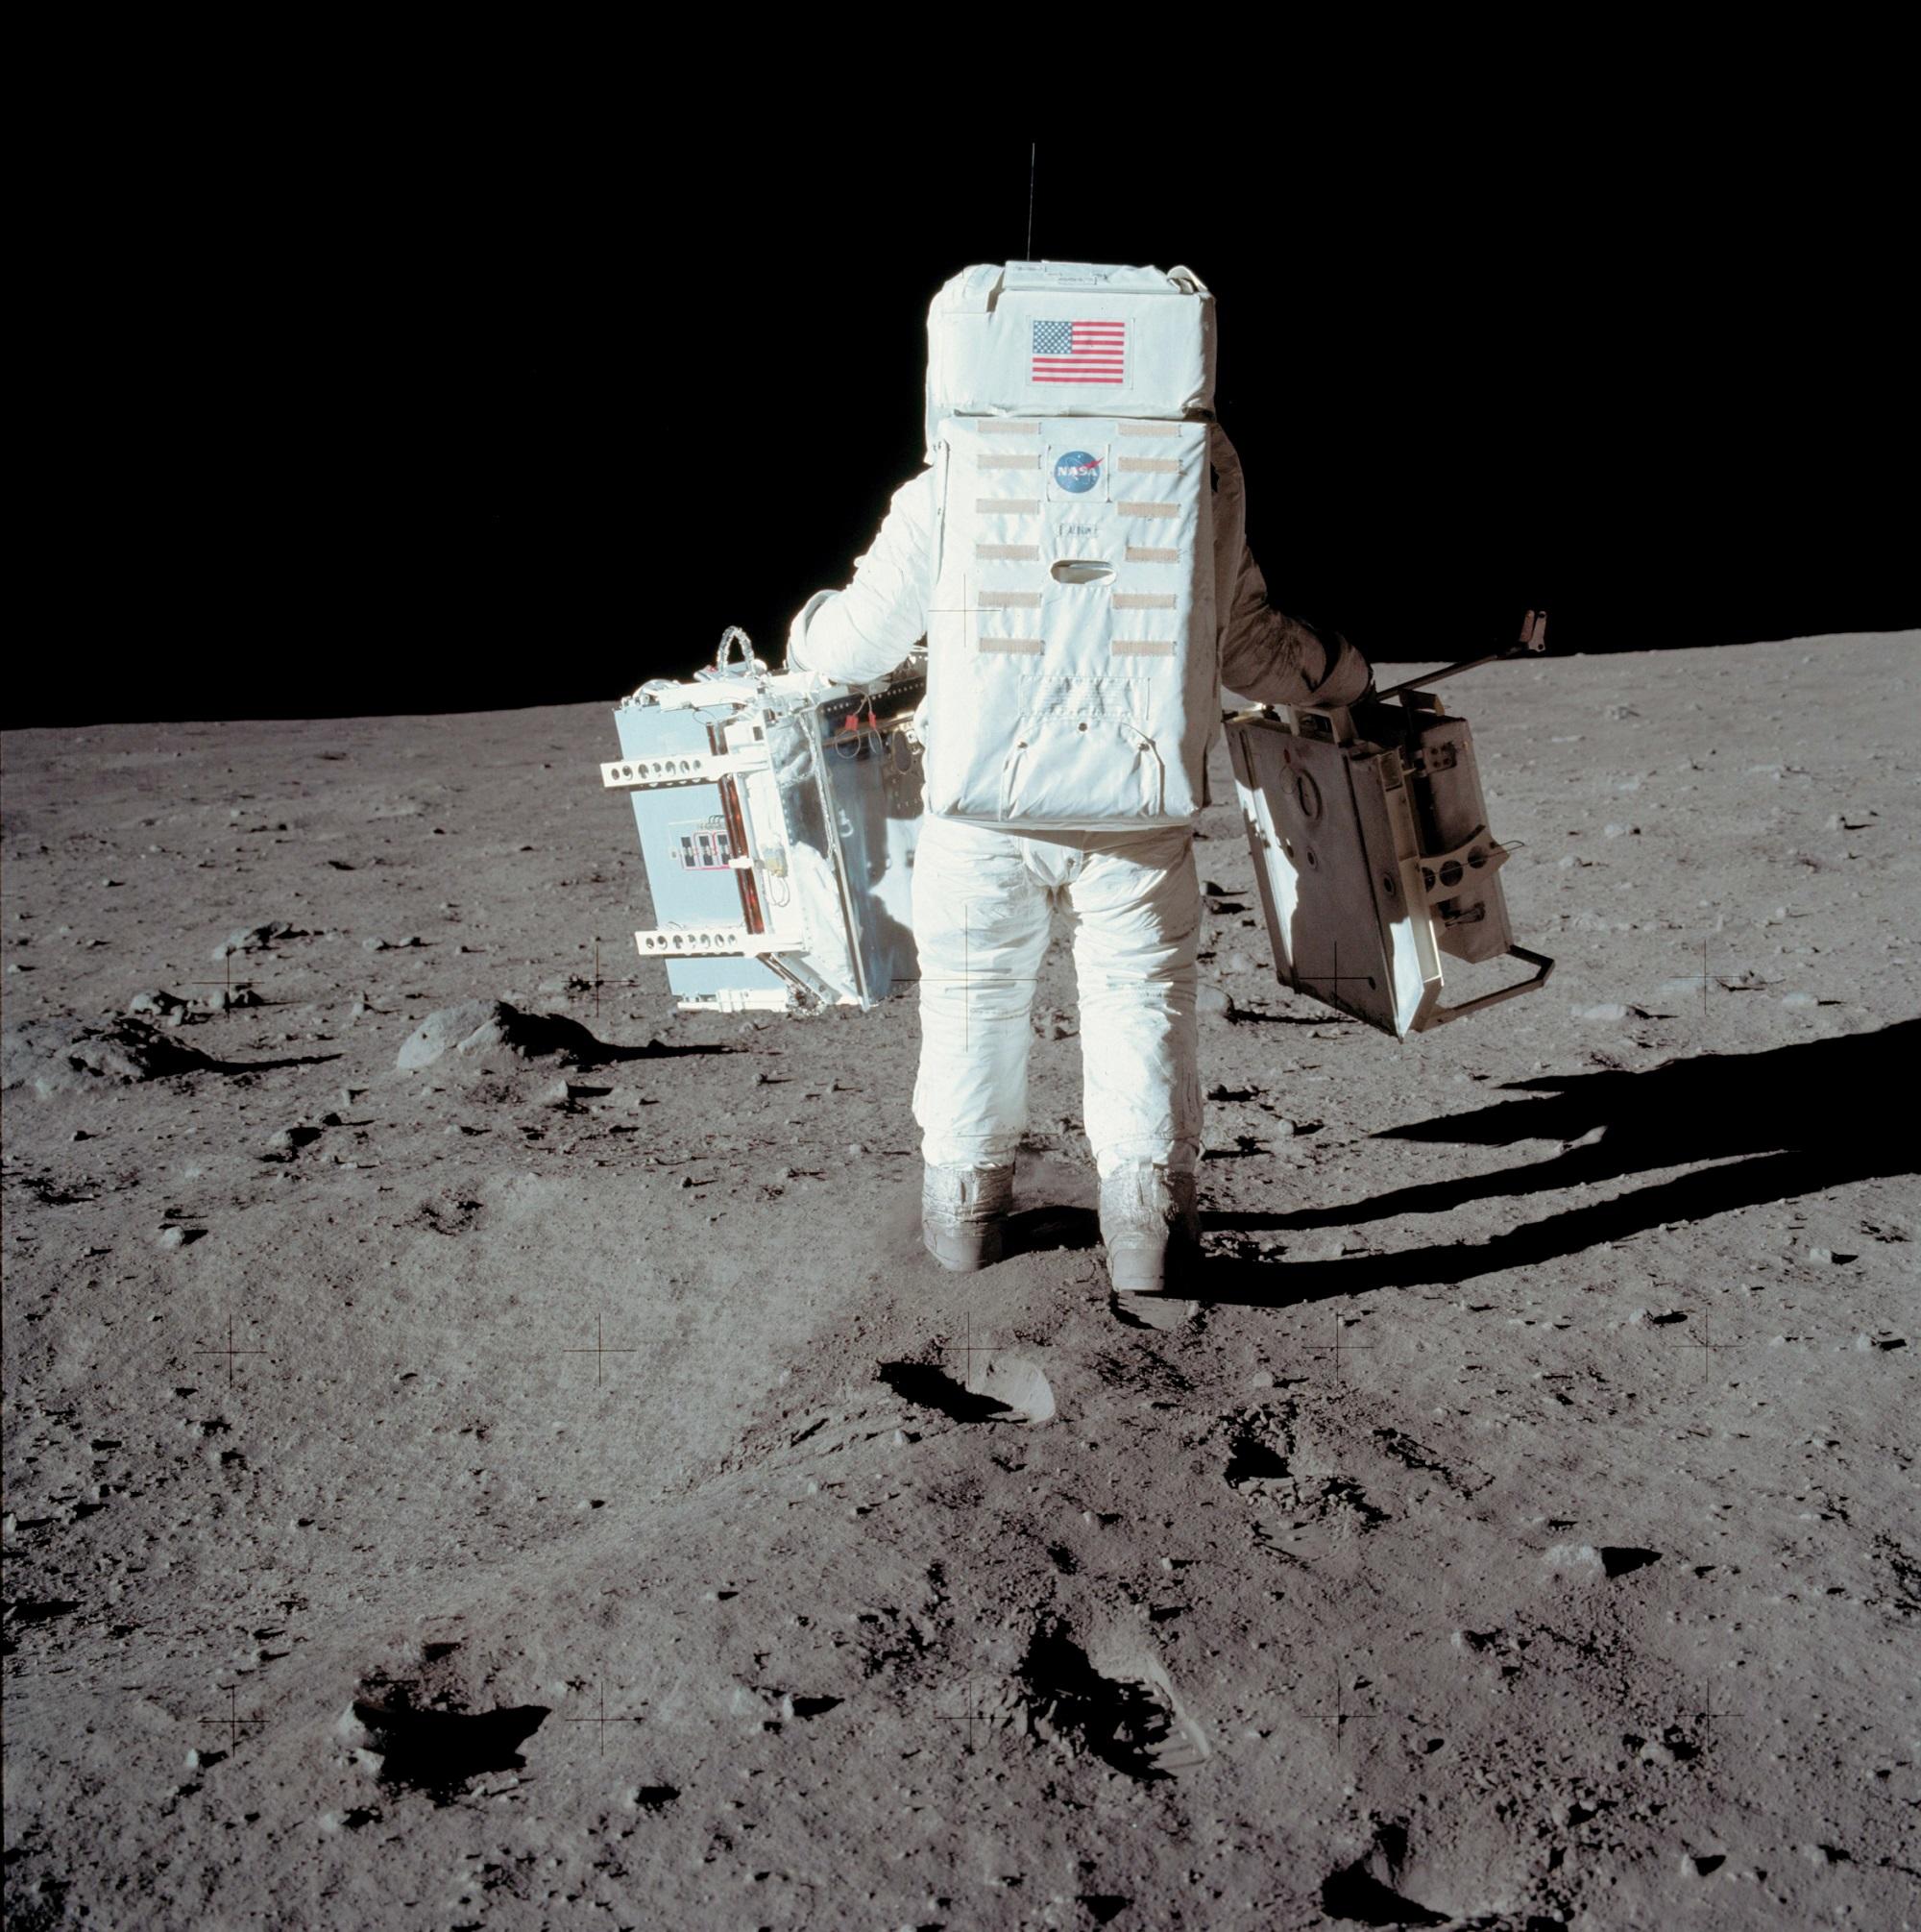 رائد فضاء أميركي في "أبولو 11" يجري تجربة للمشي على سطح القمر في صورة التقطها نيل آرمسترونغ، بعد أن تسلق كلاهما سطح القمر. 20 يوليو 1969. وكالة ناسا / أ ف ب